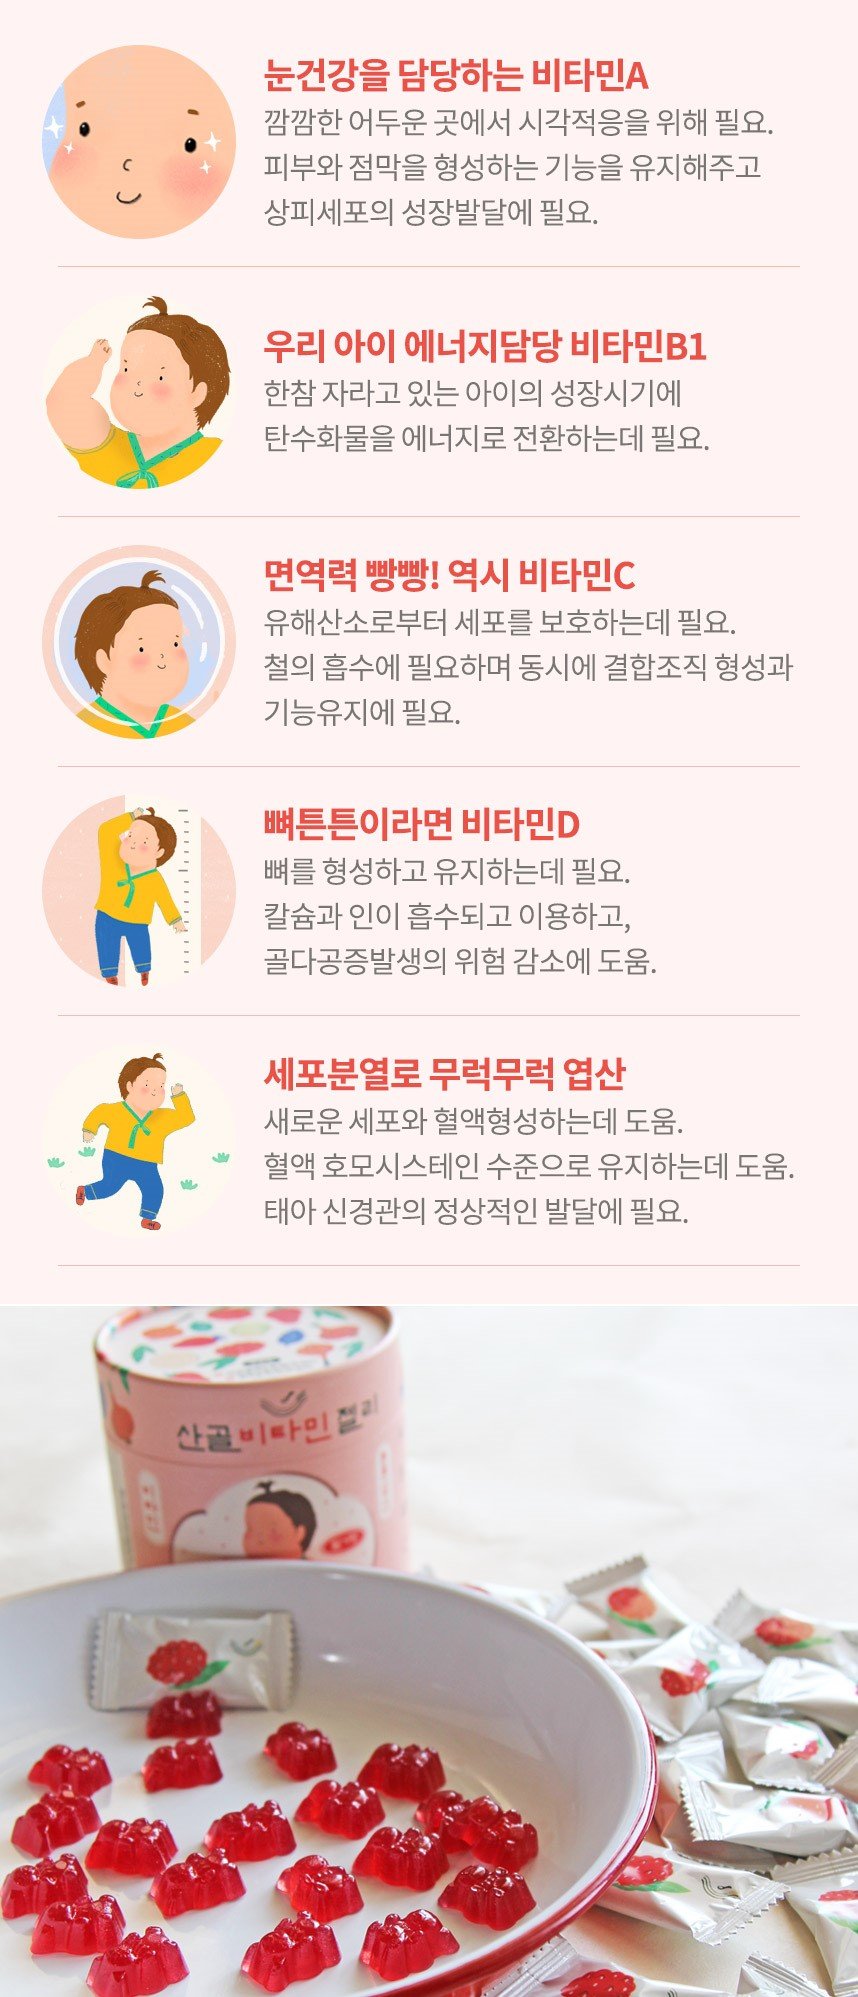 韓國食品-[Ecomommeal] 維他命啫喱軟糖 75g (2.5g*30)